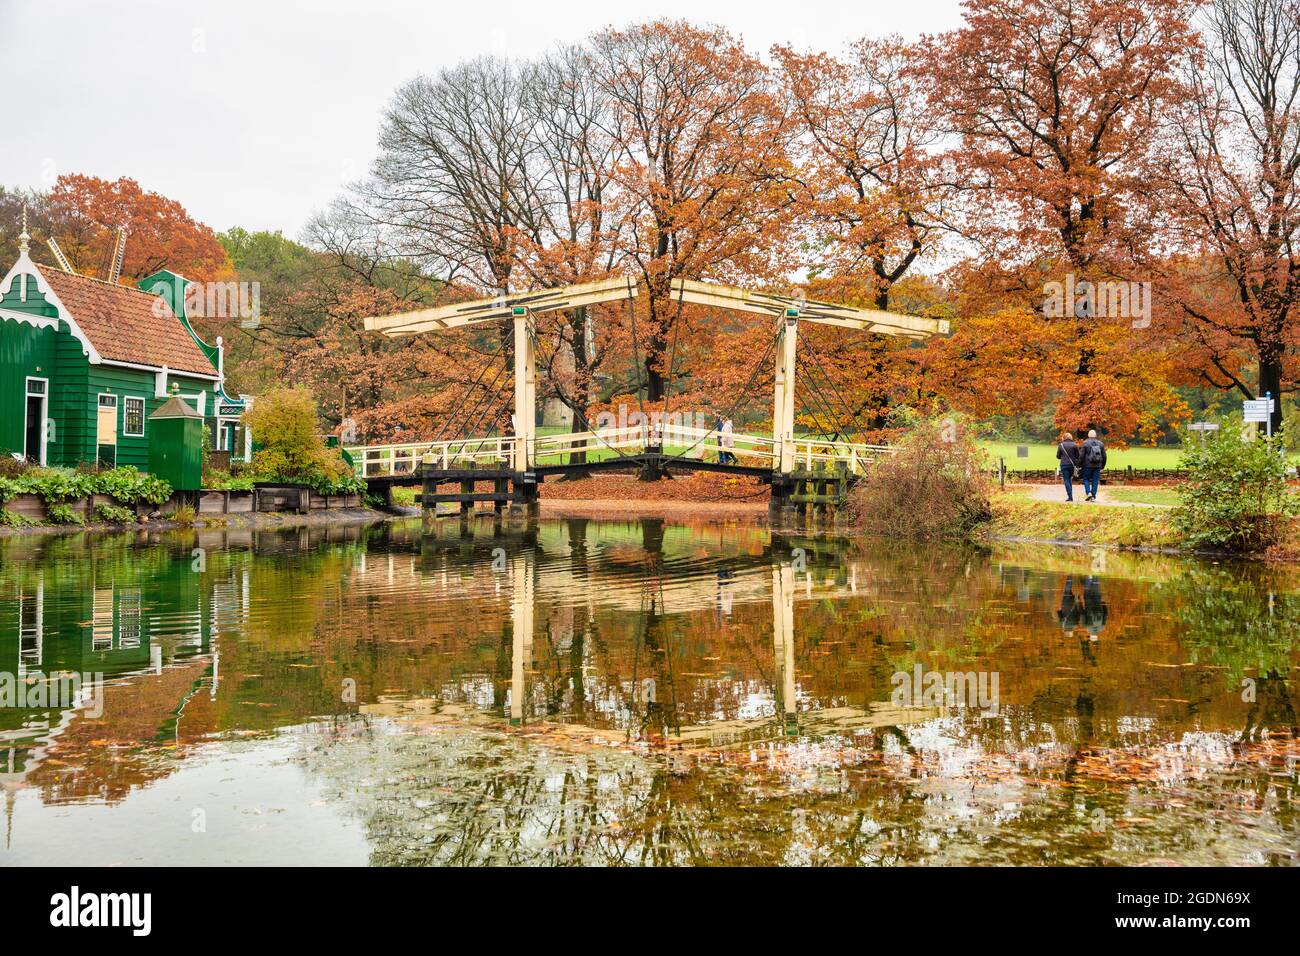 Niederlande, Arnhem, Holland Open Air Museum. Museumspark mit historischen Gebäuden. Herbstfarben. Häuser und Zugbrücke aus der Region Zaan. Stockfoto